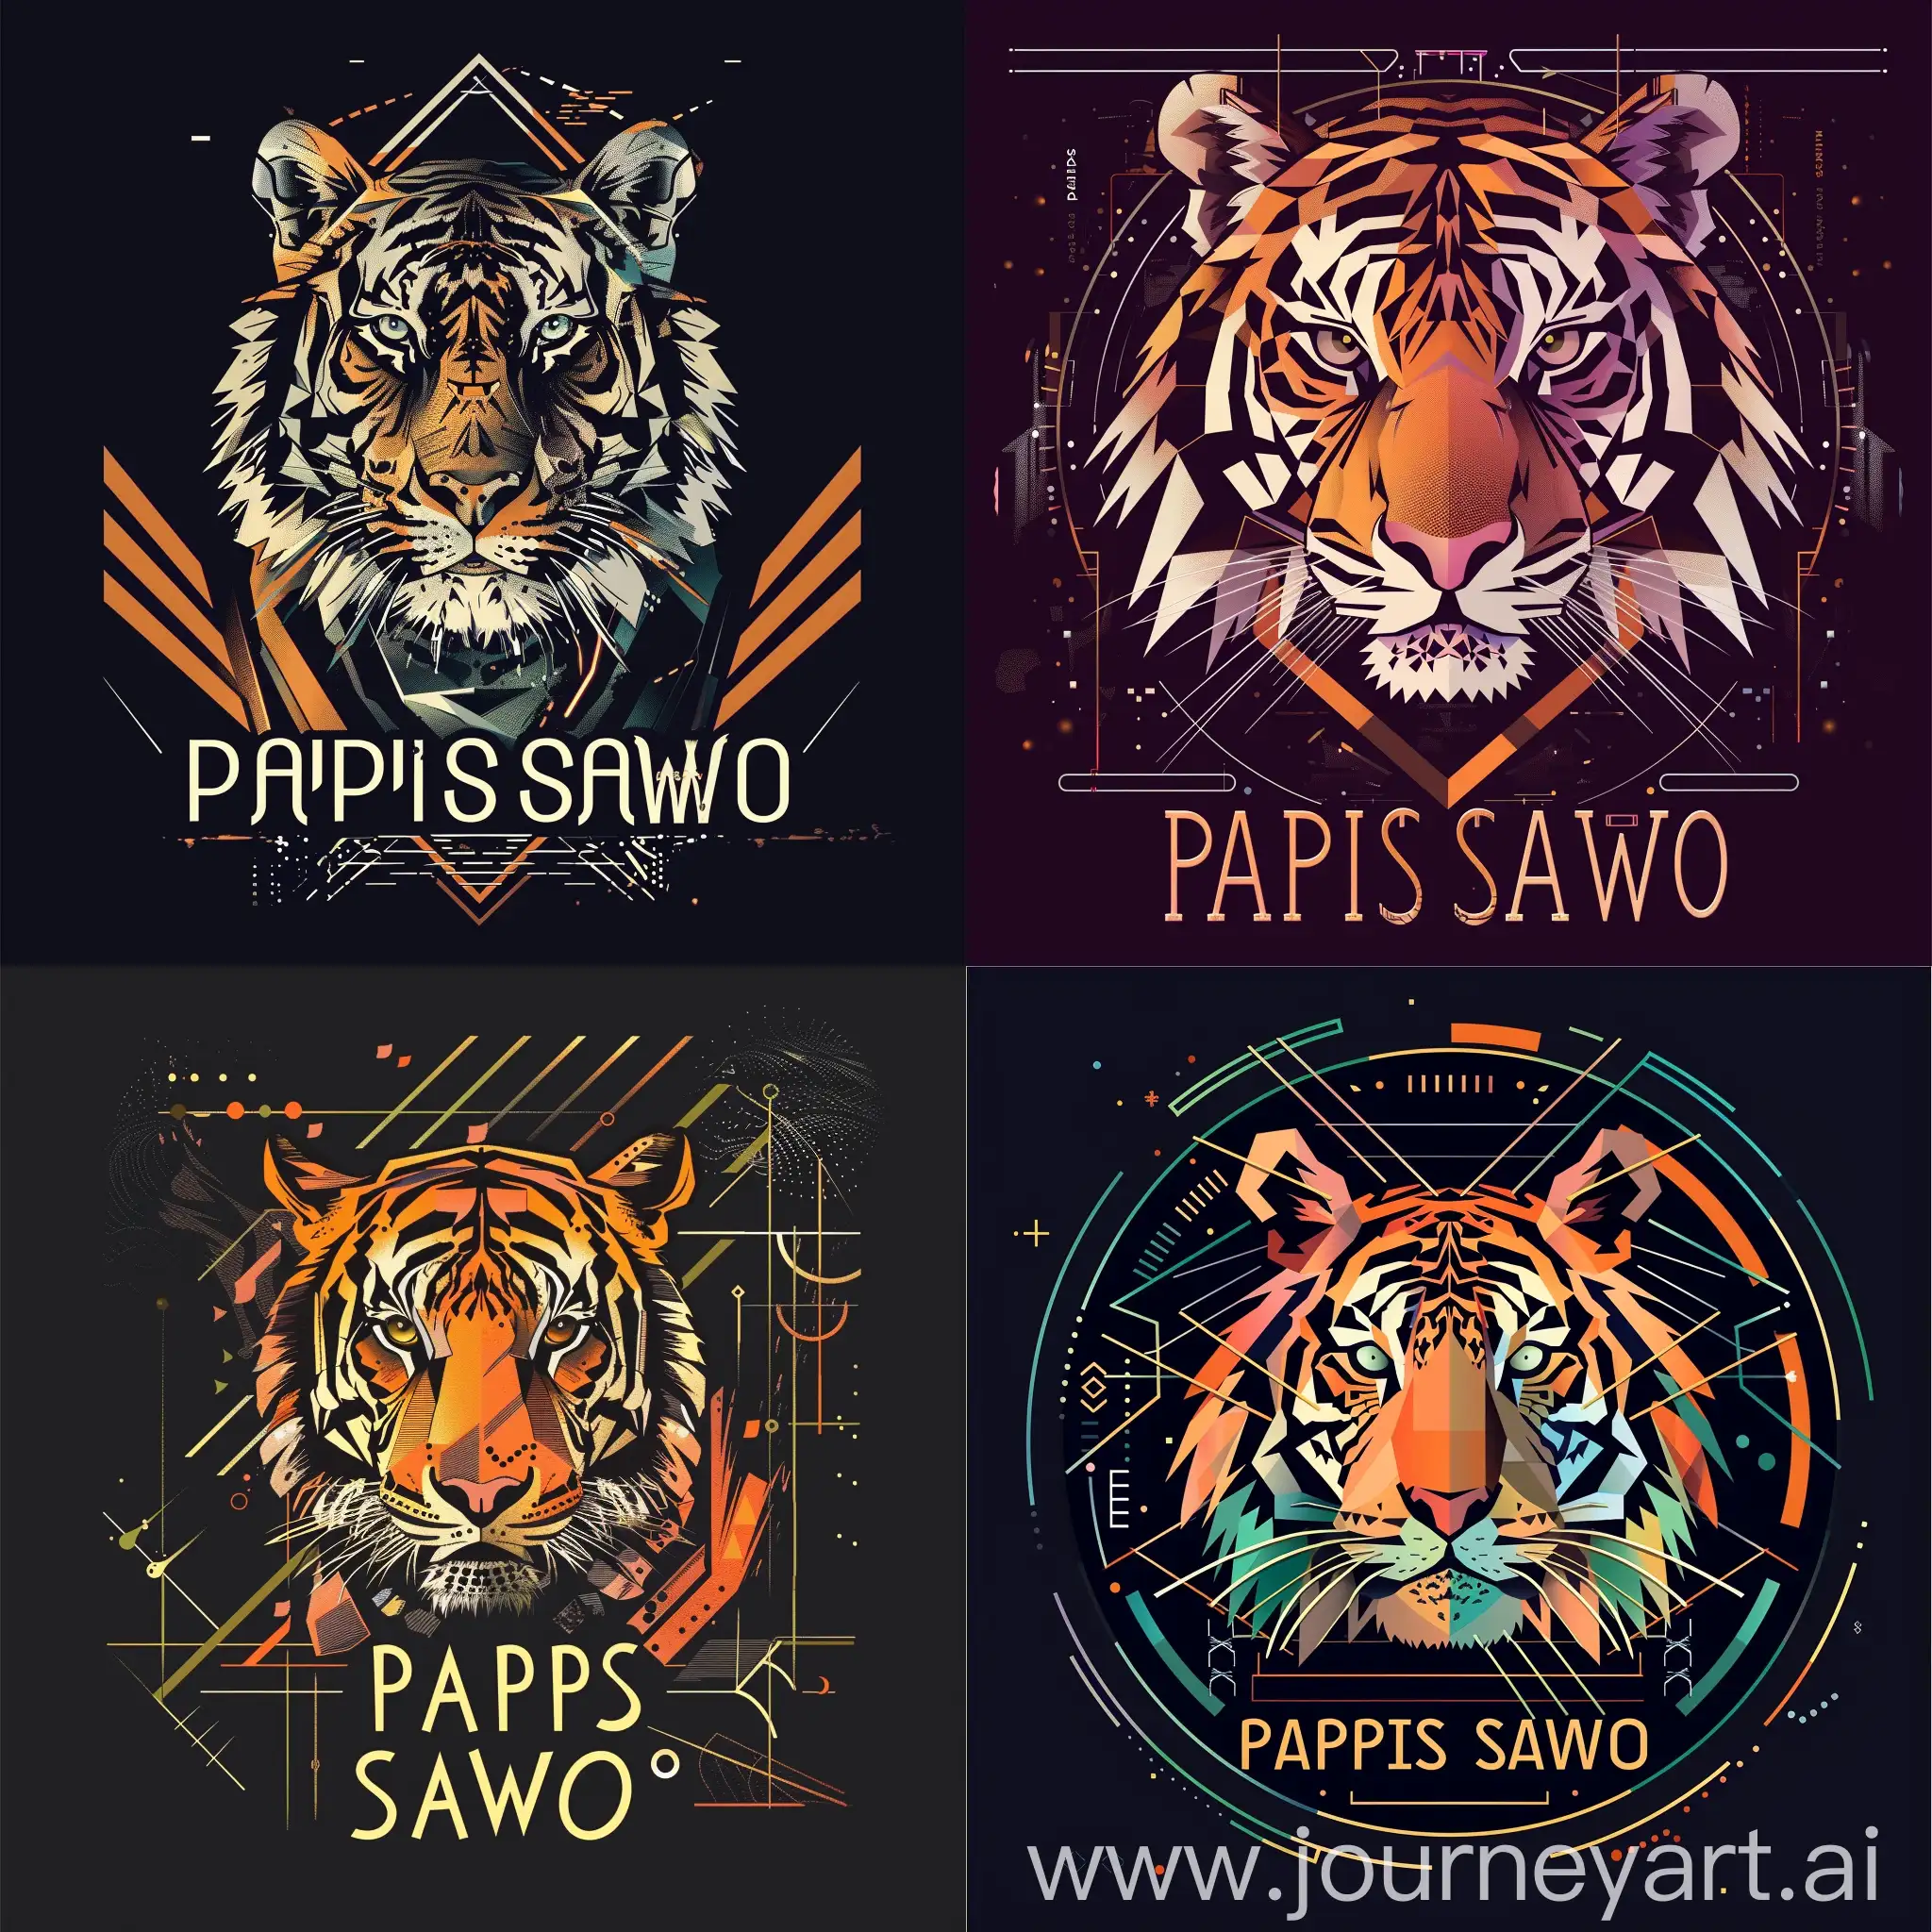 логотип со словами "PAPIS SAWO", с изображением стилизованного тигра в техно стиле, тигр в стилизованном графическом виде с геометрическими формами и цифровыми элементами, чтобы подчеркнуть техно-стиль логотипа, неоновый шрифт для надписи "PAPIS SAWO", добавит эффектного контраста и привлечет внимание к логотипу